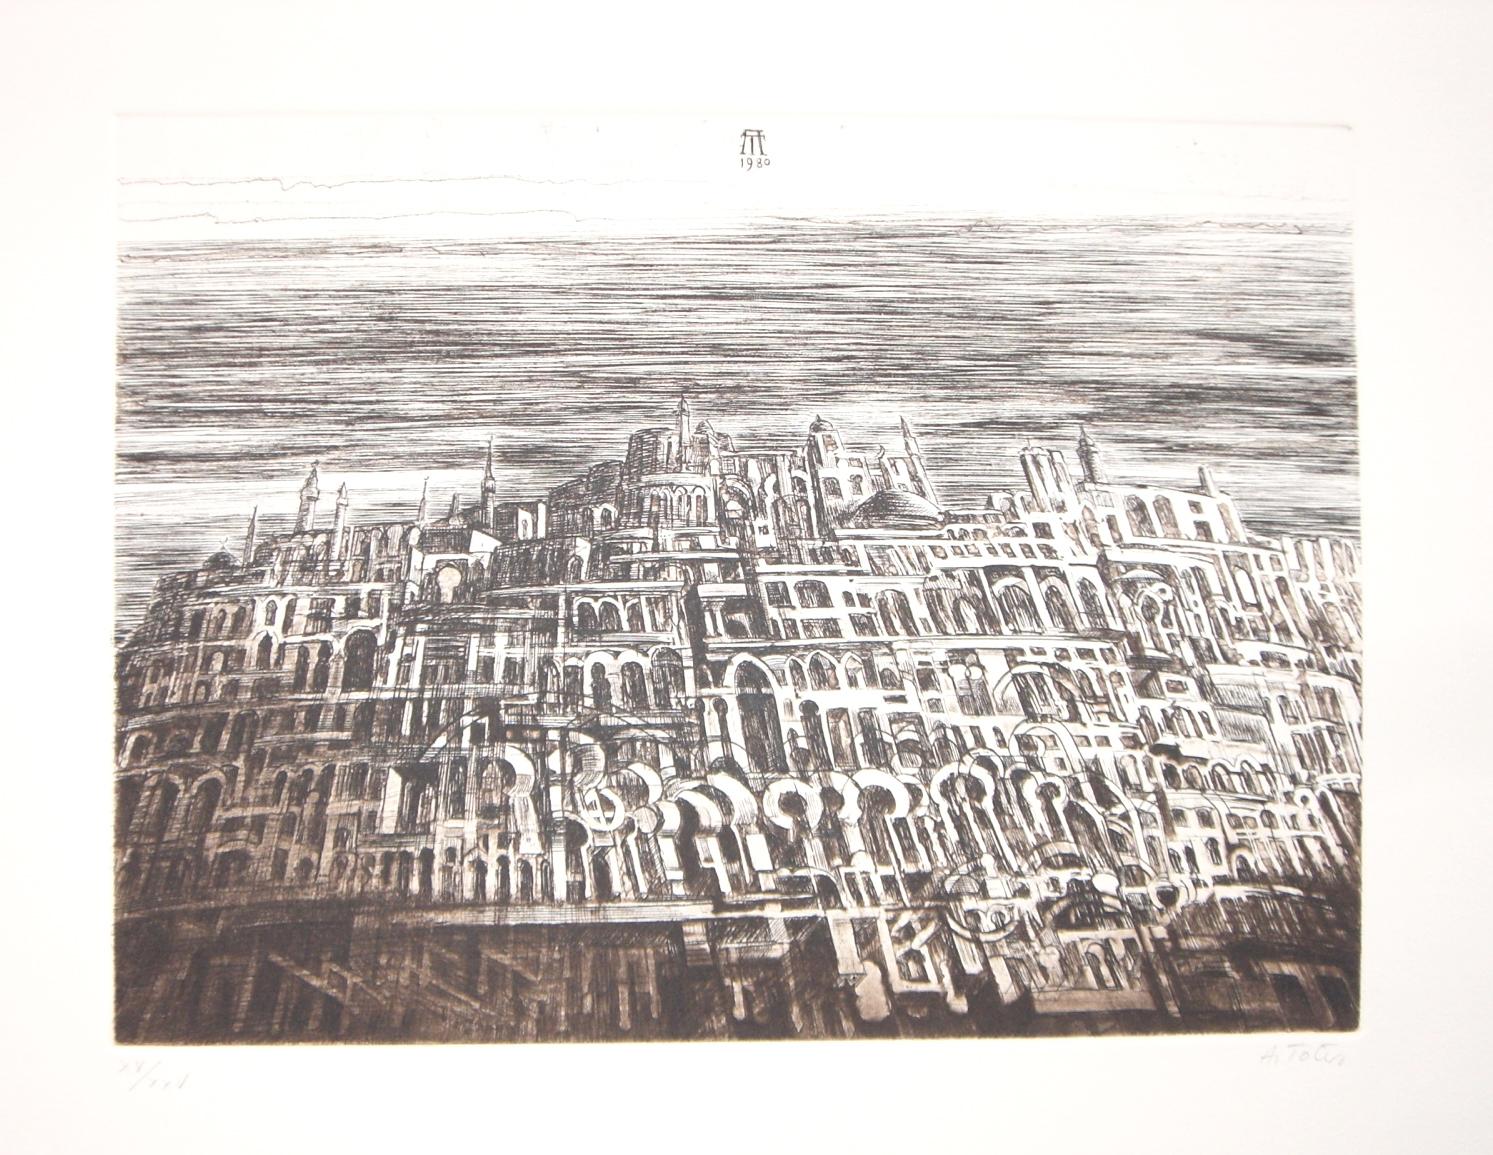 Abstract Print Antonio De Totero - Arab City - Gravure originale d'Antonio de Totero - 1980 environ